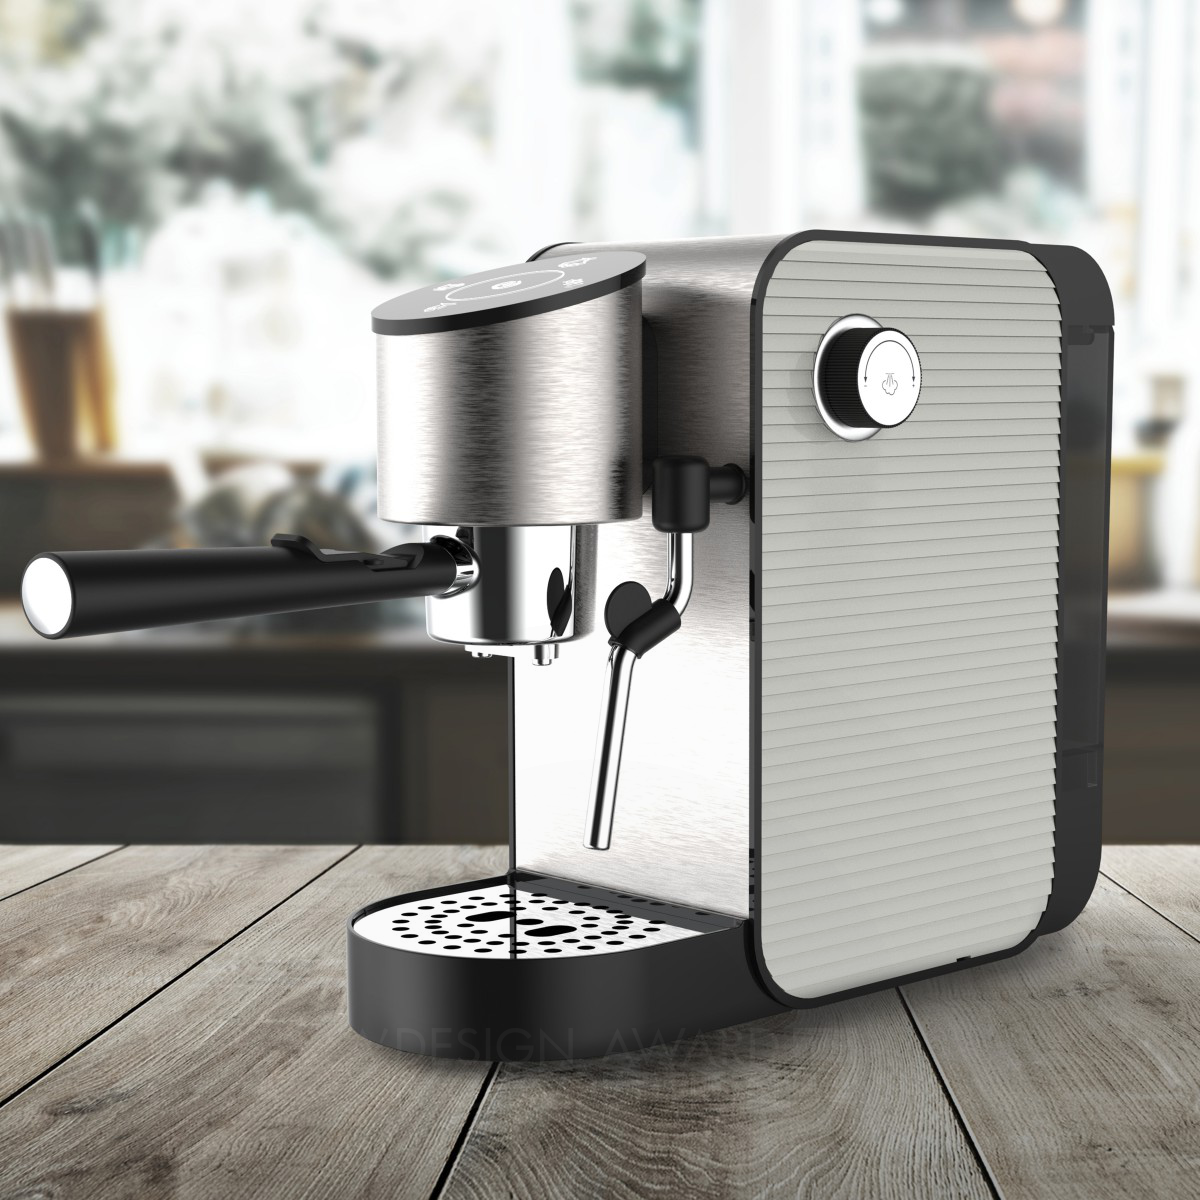 Nicola Zanetti wins Iron at the prestigious A' Home Appliances Design Award with GM11A Coffee Machine.